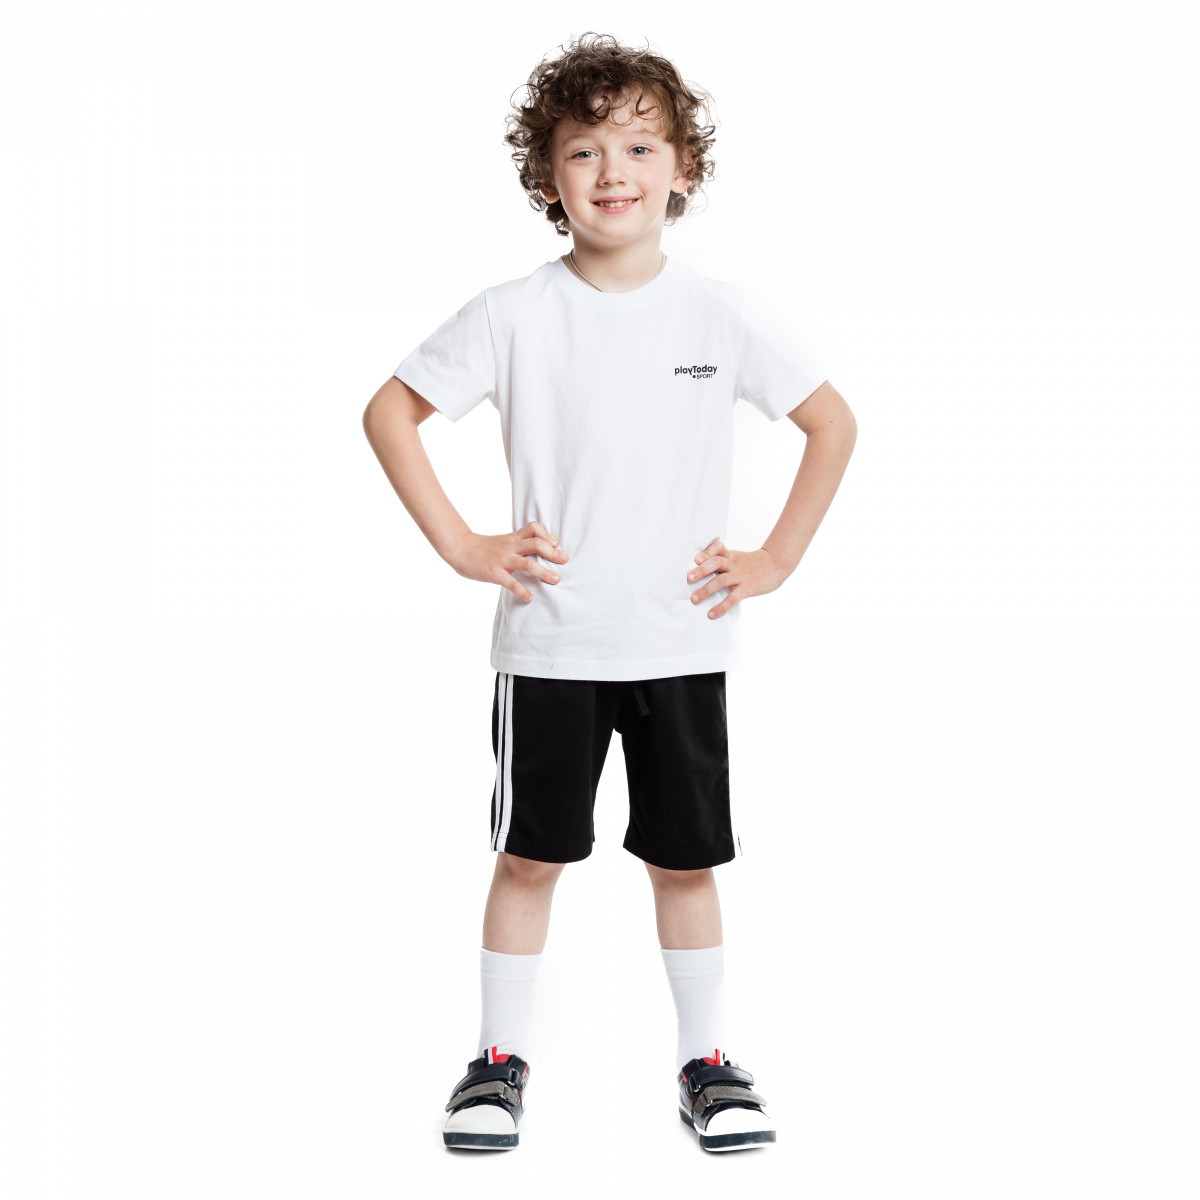 Белая футболка черные шорты. Спортивная форма белая футболка и черные шорты. Спортивные шорты для мальчика. Мальчик в физкультурной форме. Белая футболка и черные шорты.